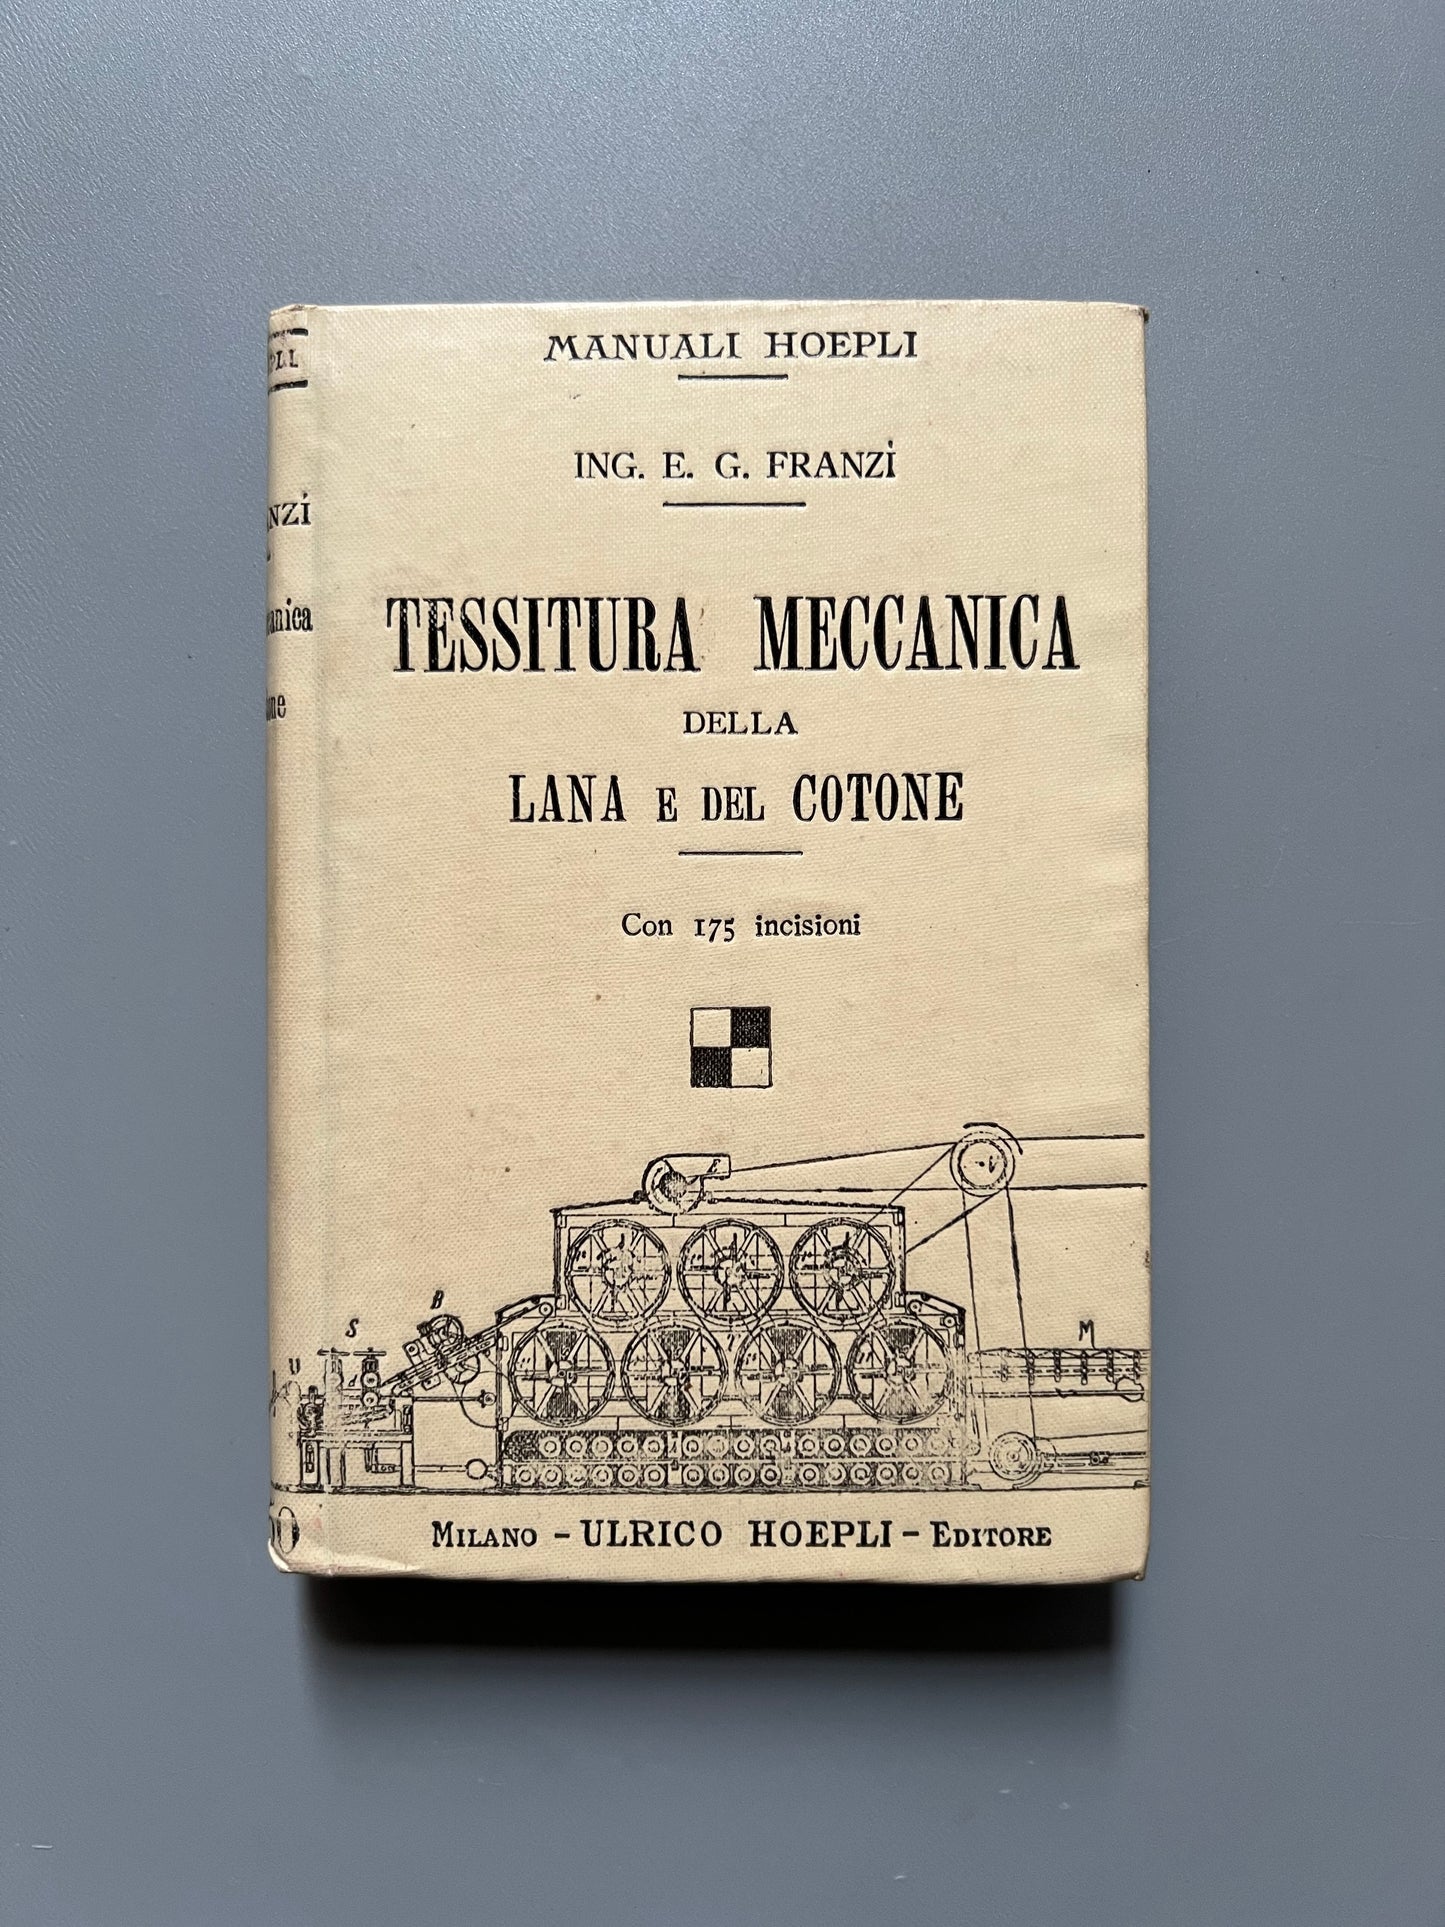 Tessitura meccanica della lana e del cotone, Franzì - Ulrico Hoepli, 1911